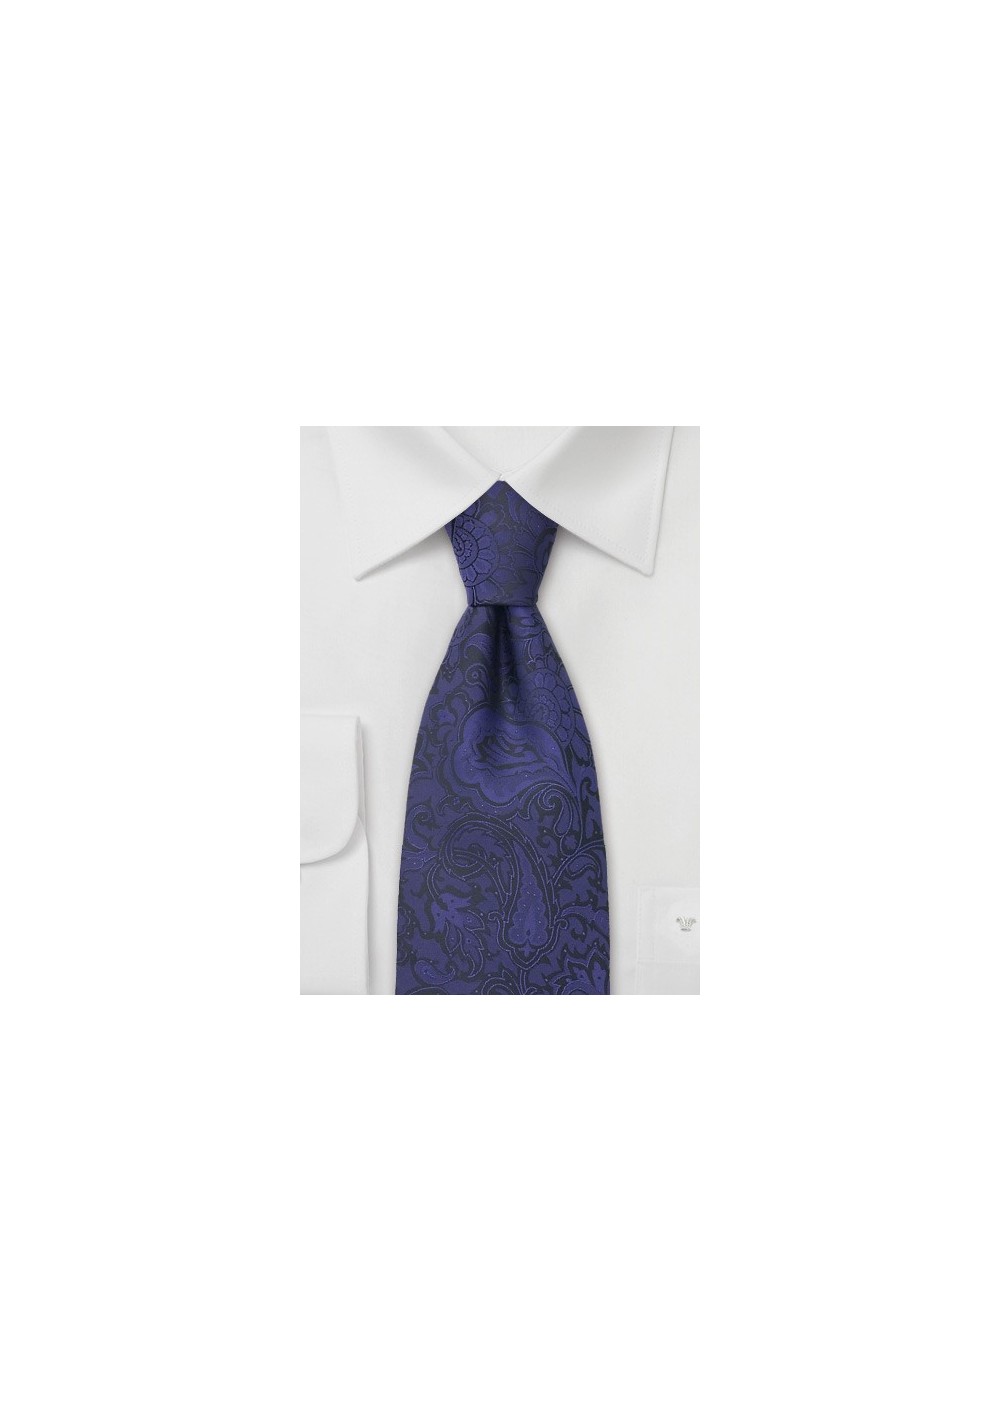 Indigo-Purple Paisley Tie